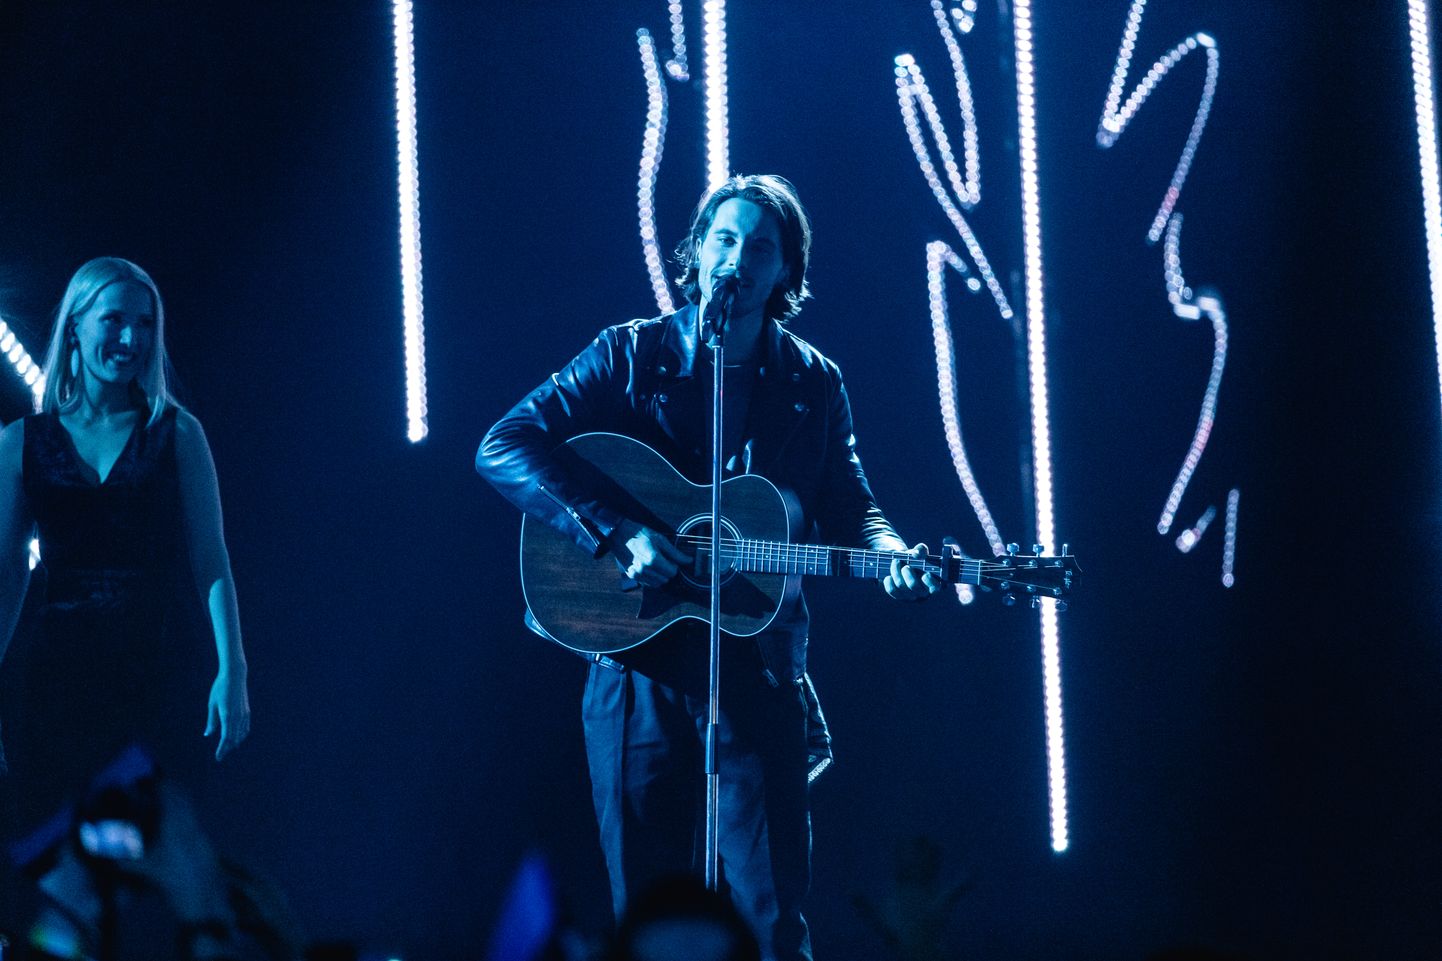 Eesti Laul 2019 võitja on Victor Crone.